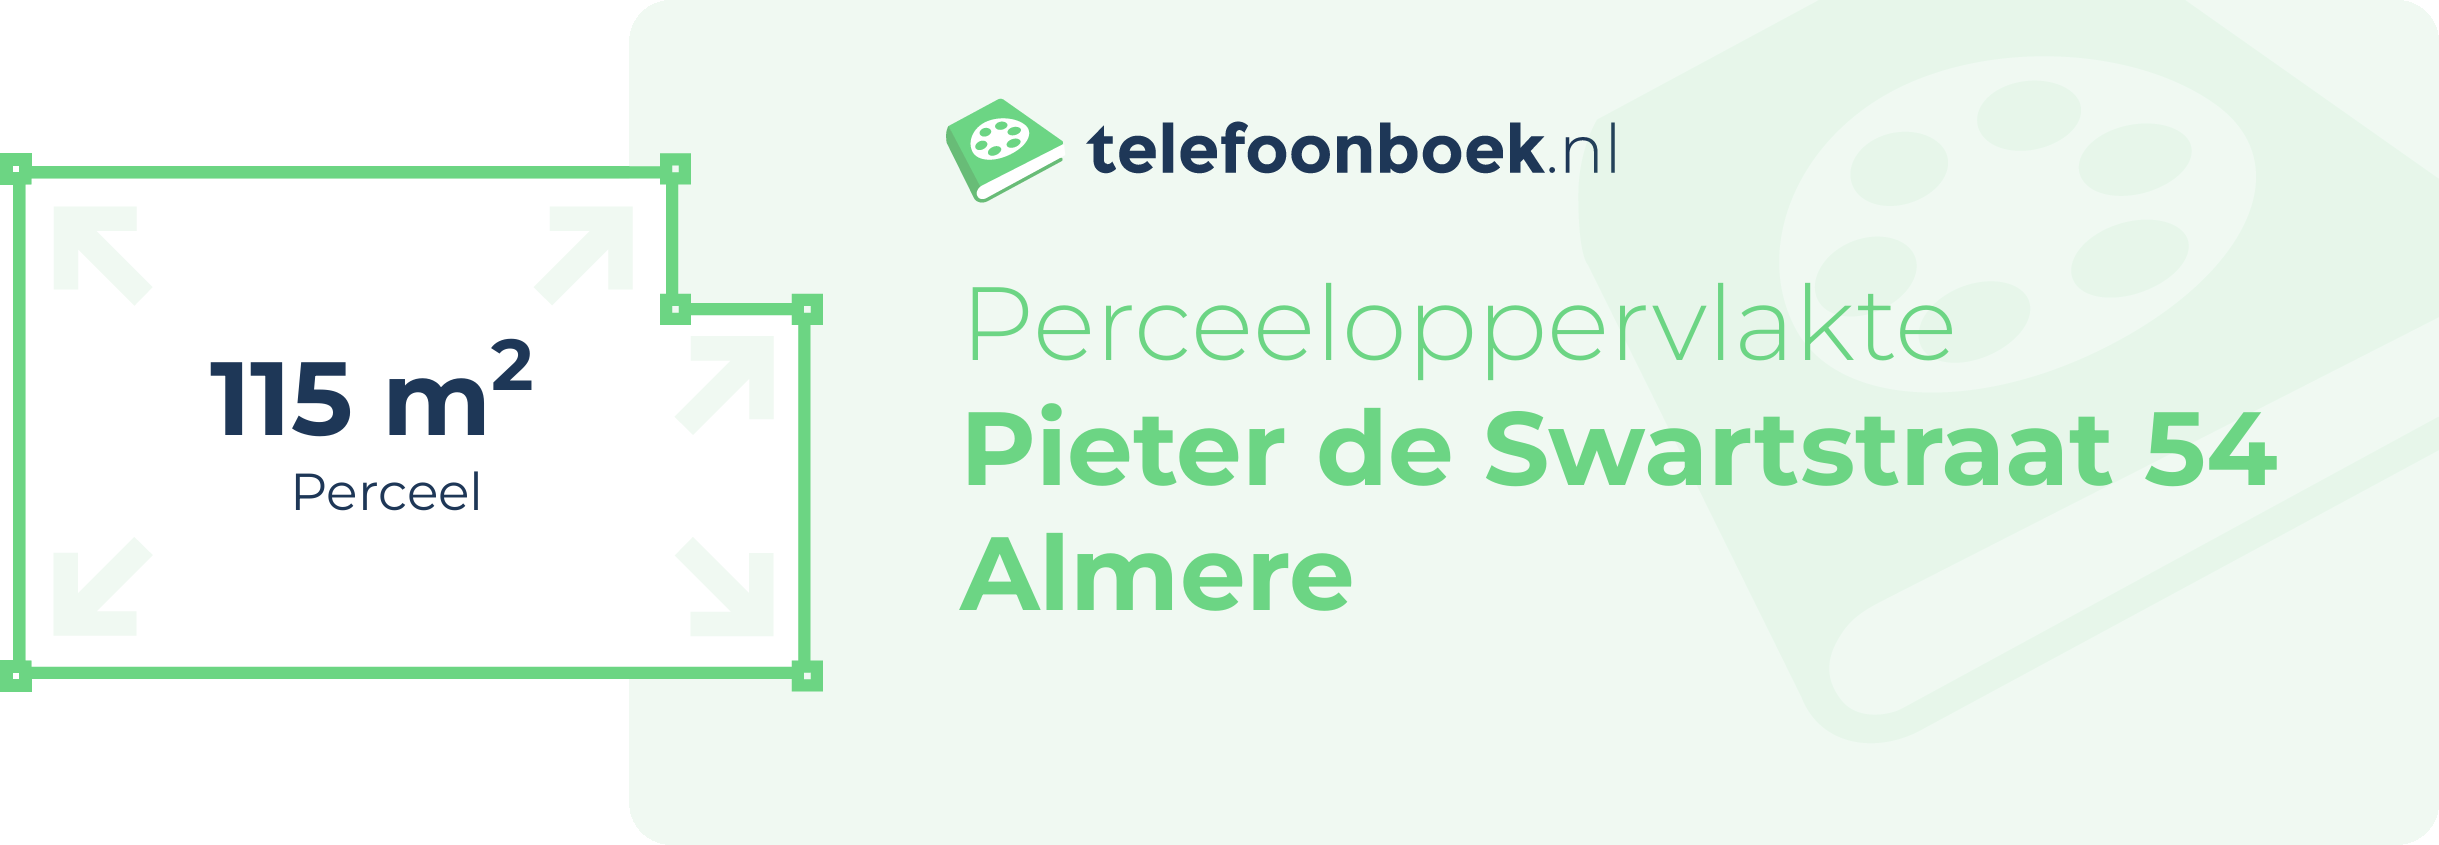 Perceeloppervlakte Pieter De Swartstraat 54 Almere